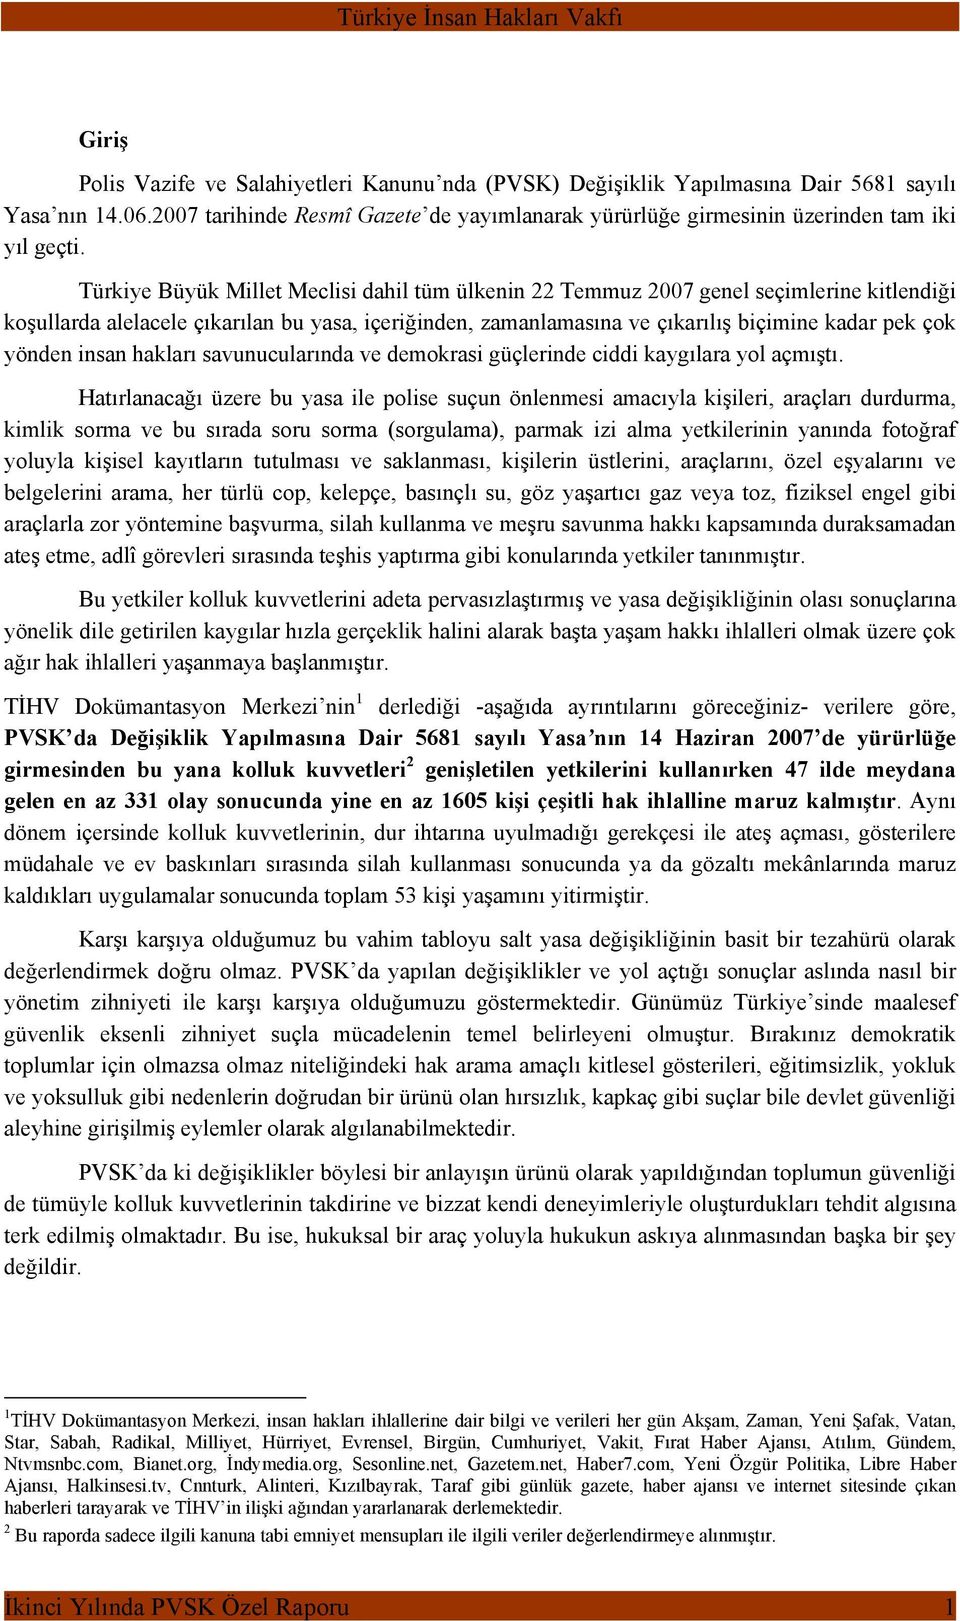 Türkiye Büyük Millet Meclisi dahil tüm ülkenin 22 Temmuz 2007 genel seçimlerine kitlendiği koşullarda alelacele çıkarılan bu yasa, içeriğinden, zamanlamasına ve çıkarılış biçimine kadar pek çok